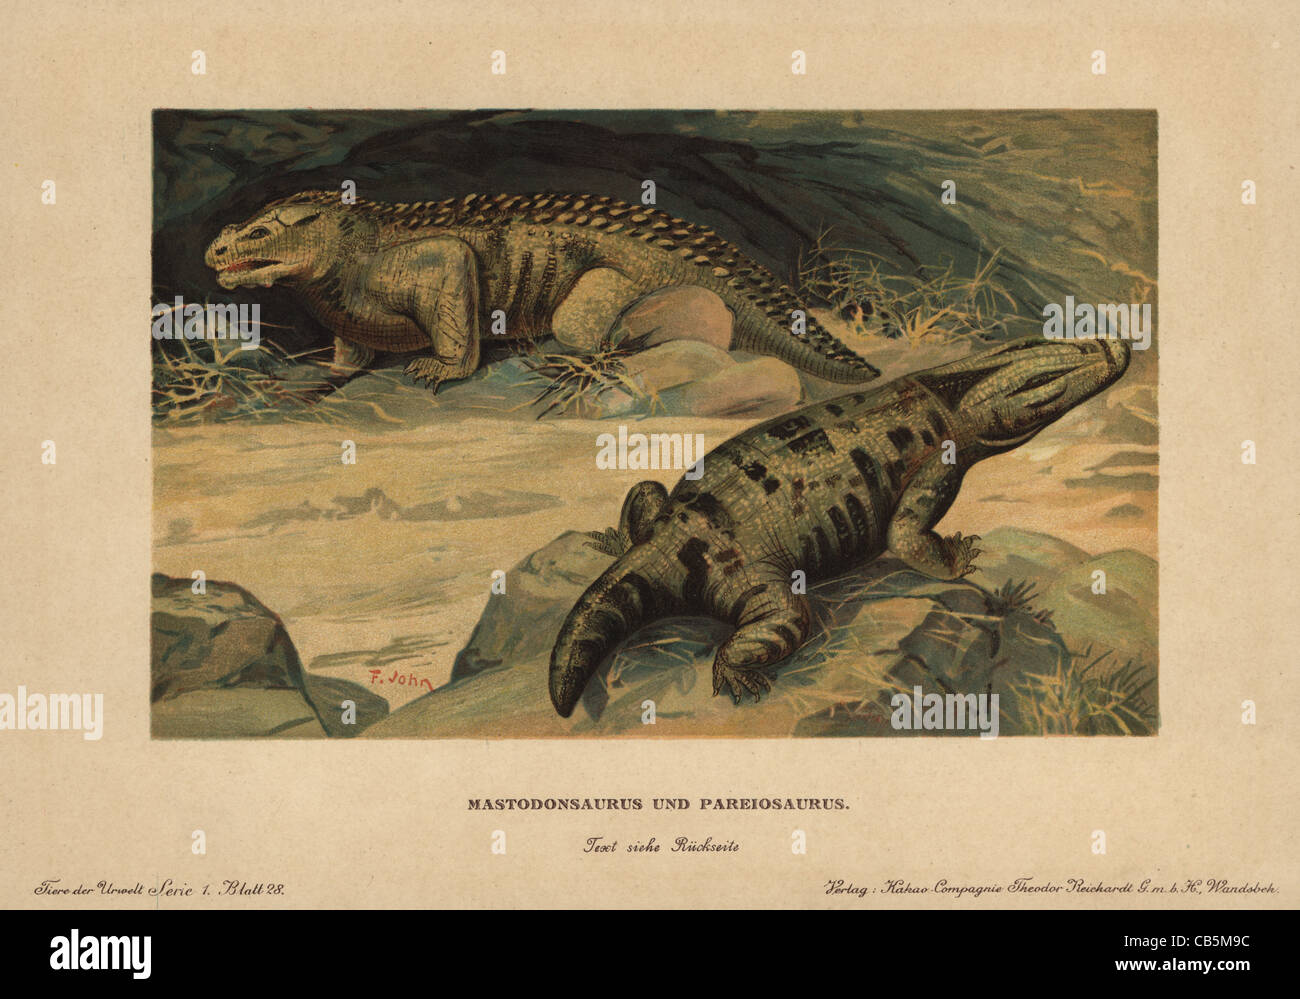 Mastodonsaurus and Pareiasaurus Stock Photo